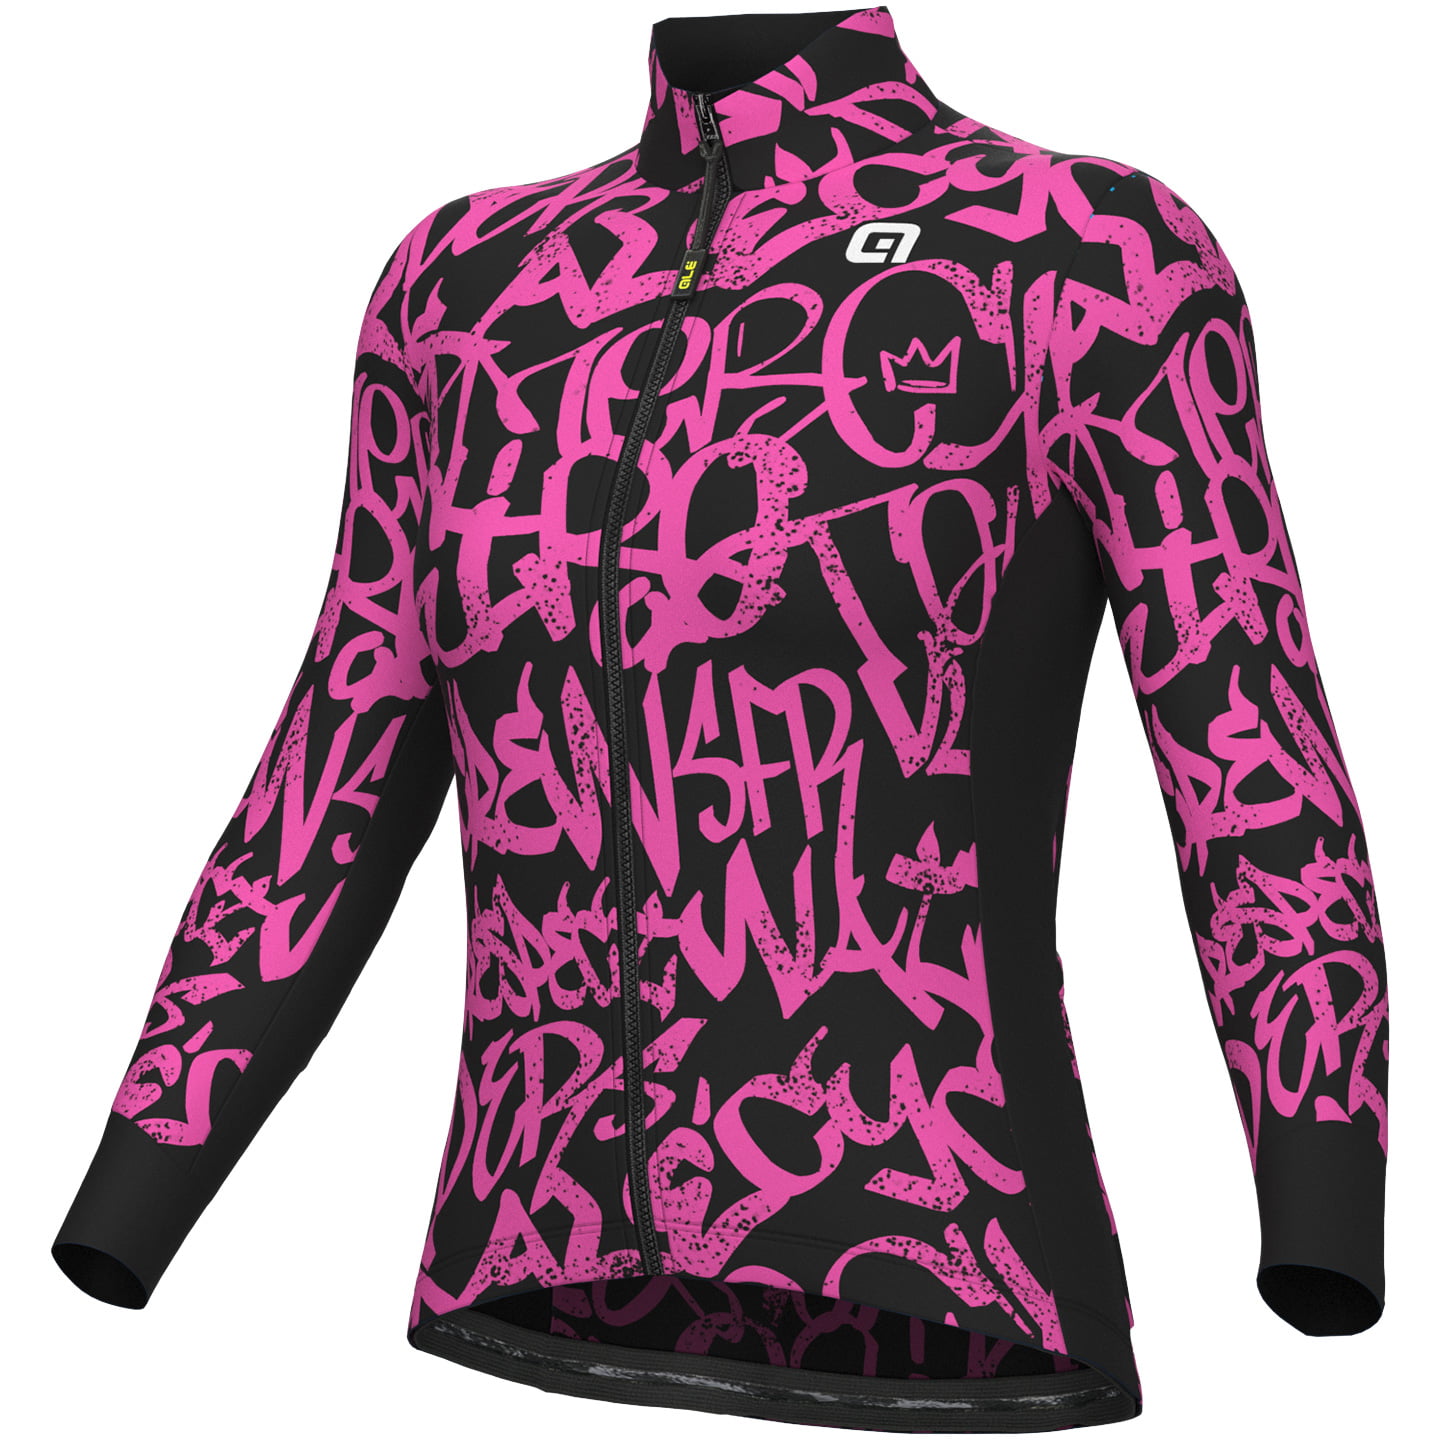 ALE Ride Women’s Jersey Jacket Jersey / Jacket, size XL, Cycle jersey, Bike gear